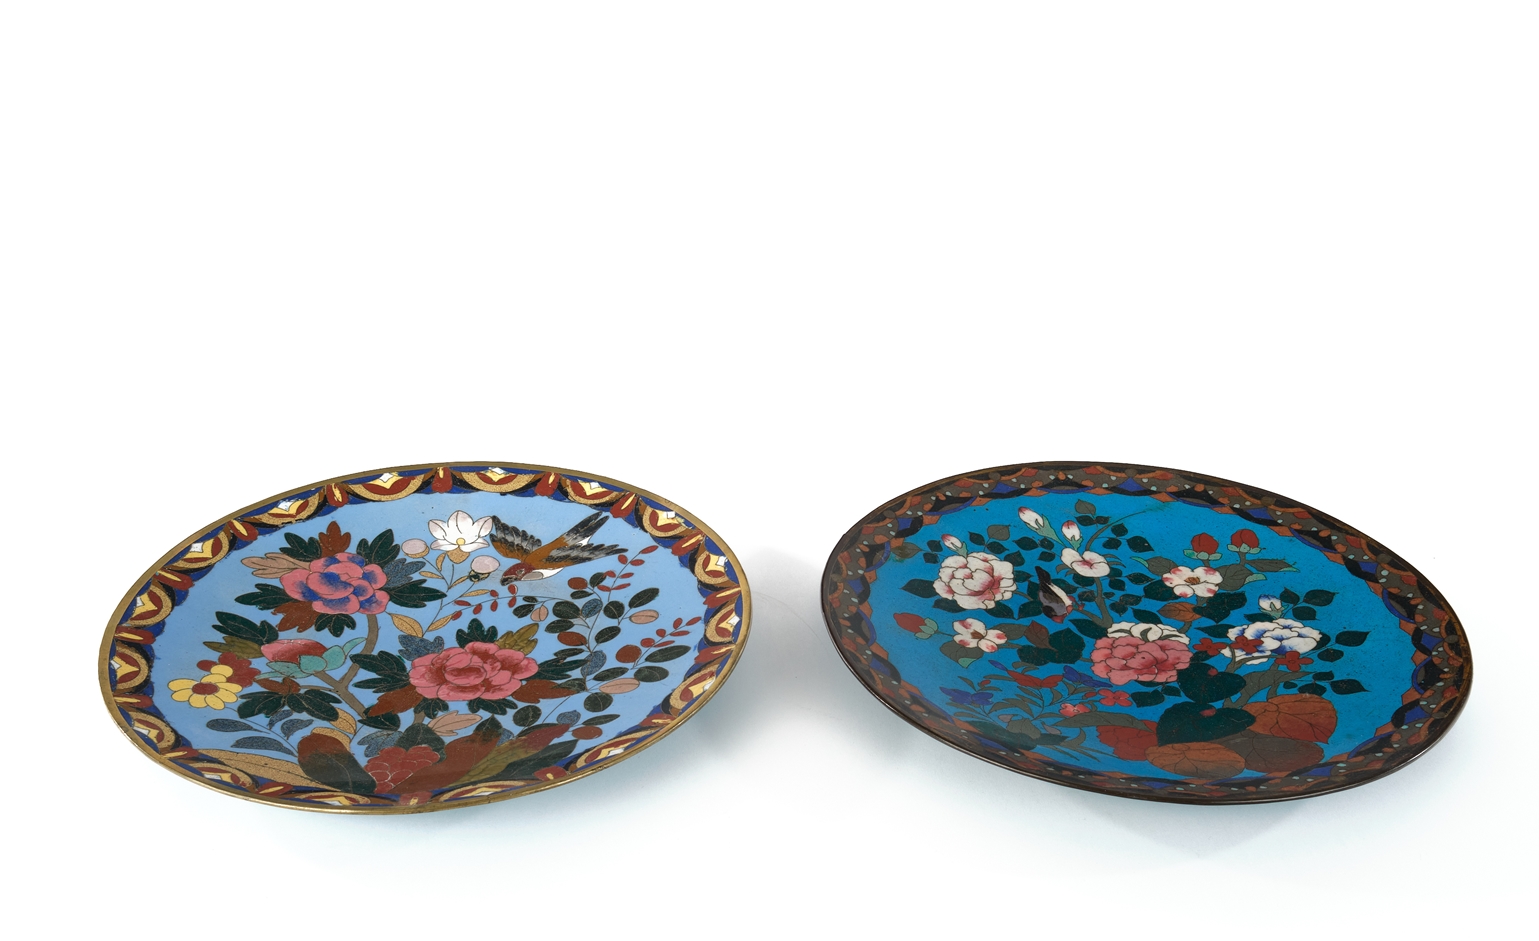 2 Platten, Japan, um 1900, Cloisonné, farbige Blütendekore auf blauem Grund, Randbordüren, ø 30 cm, - Image 2 of 3